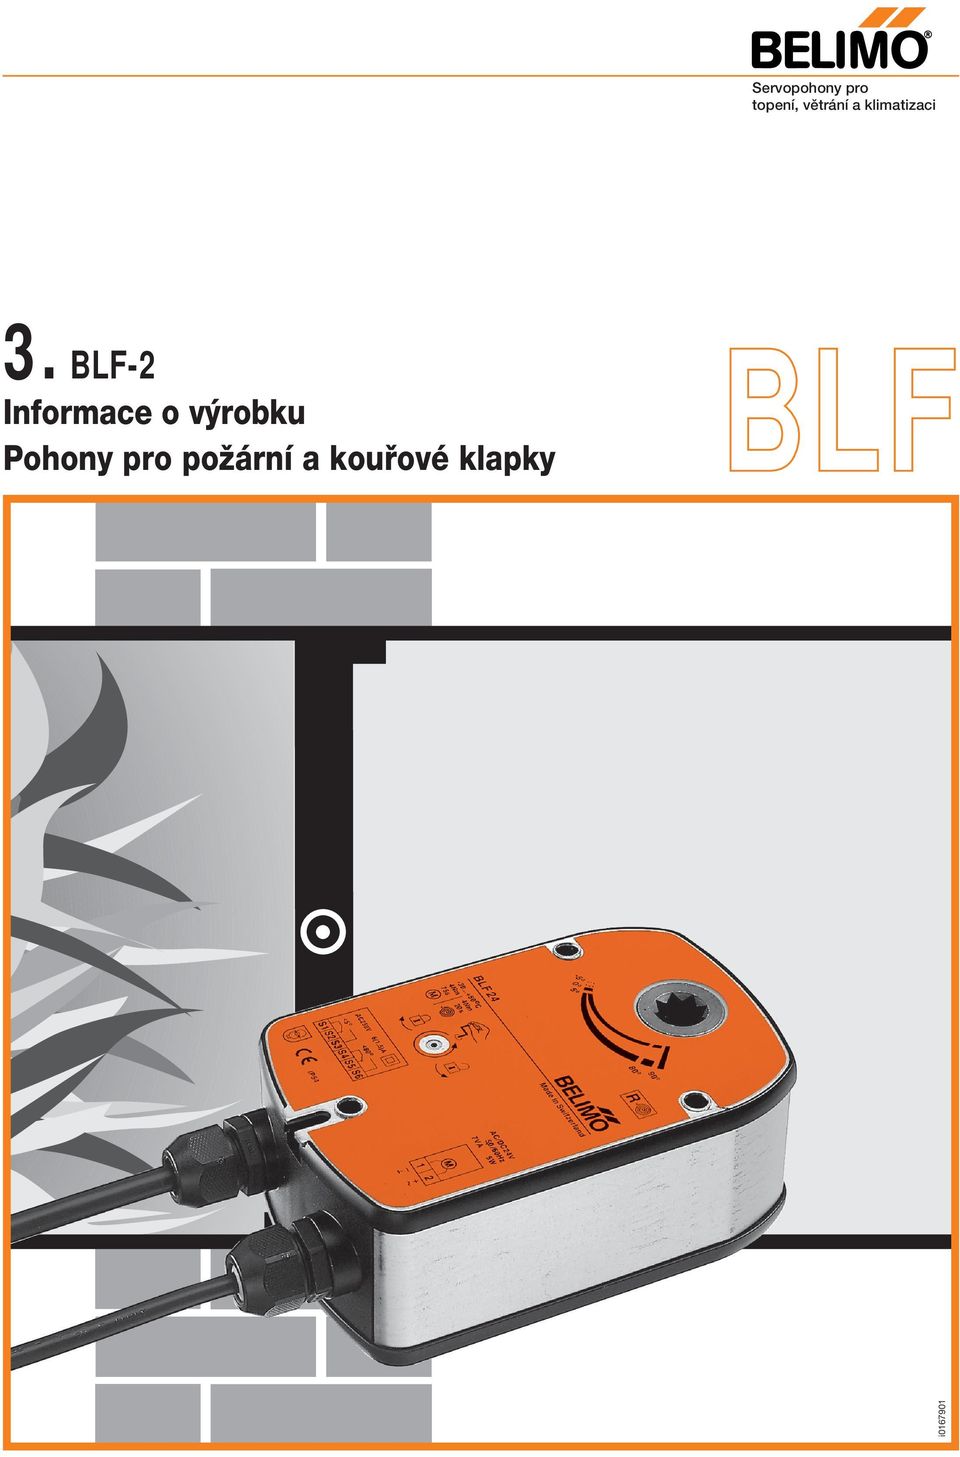 BLF-2 Informace o v robku